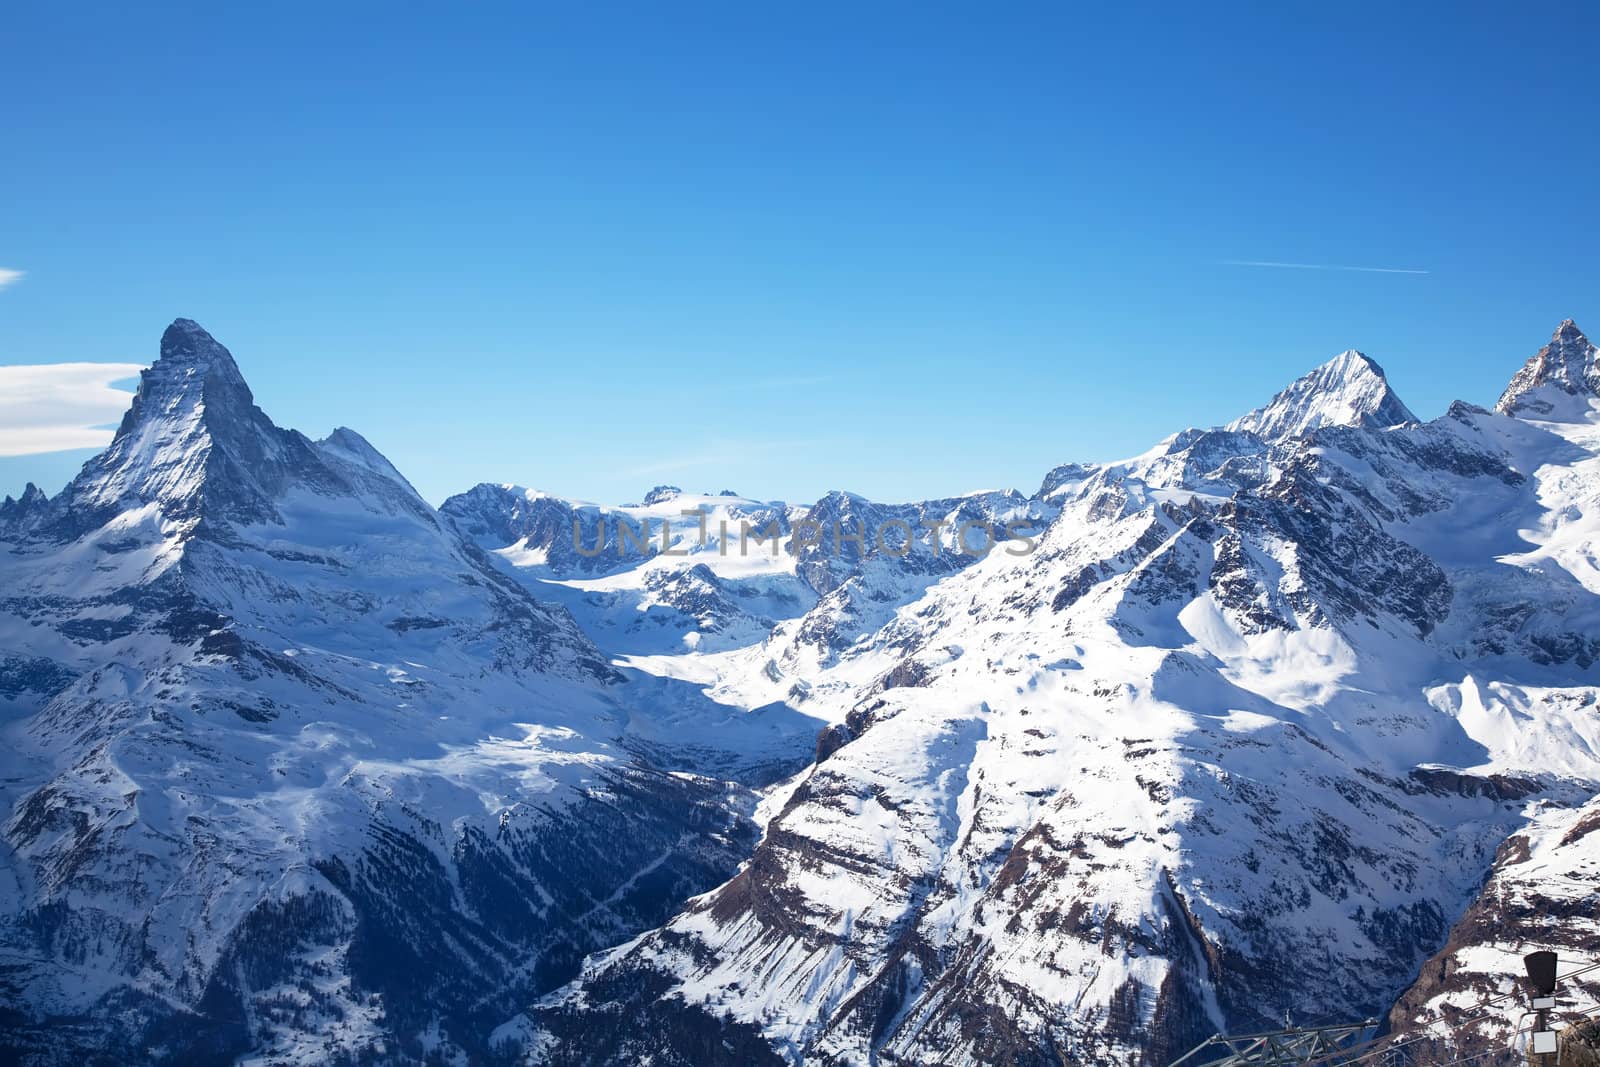 Beautiful winter landscape in Switzerland by RawGroup